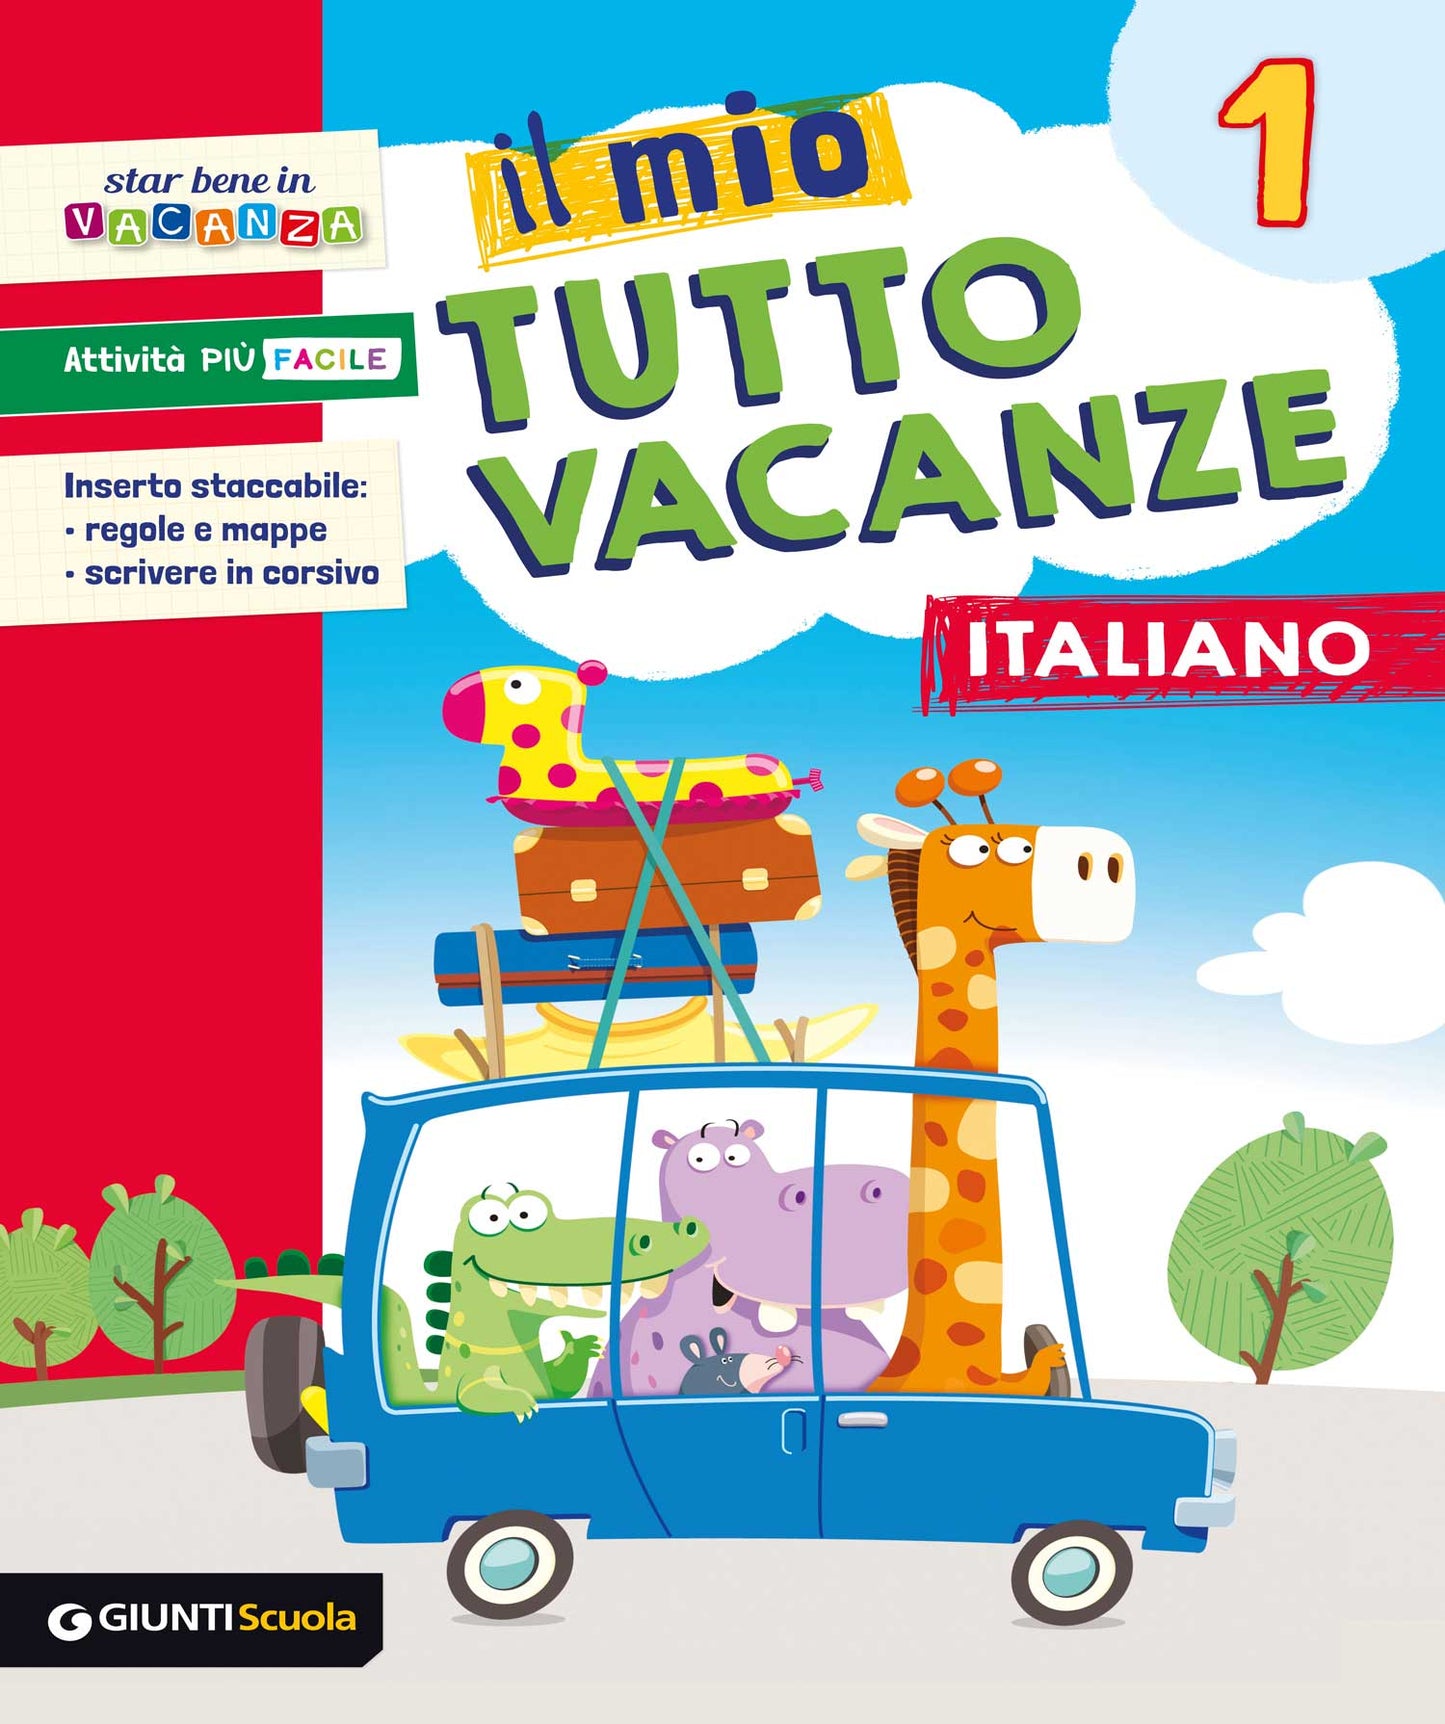 Il mio Tutto vacanze - Italiano 1. Inserto staccabile: regole e mappe, scrivere in corsivo